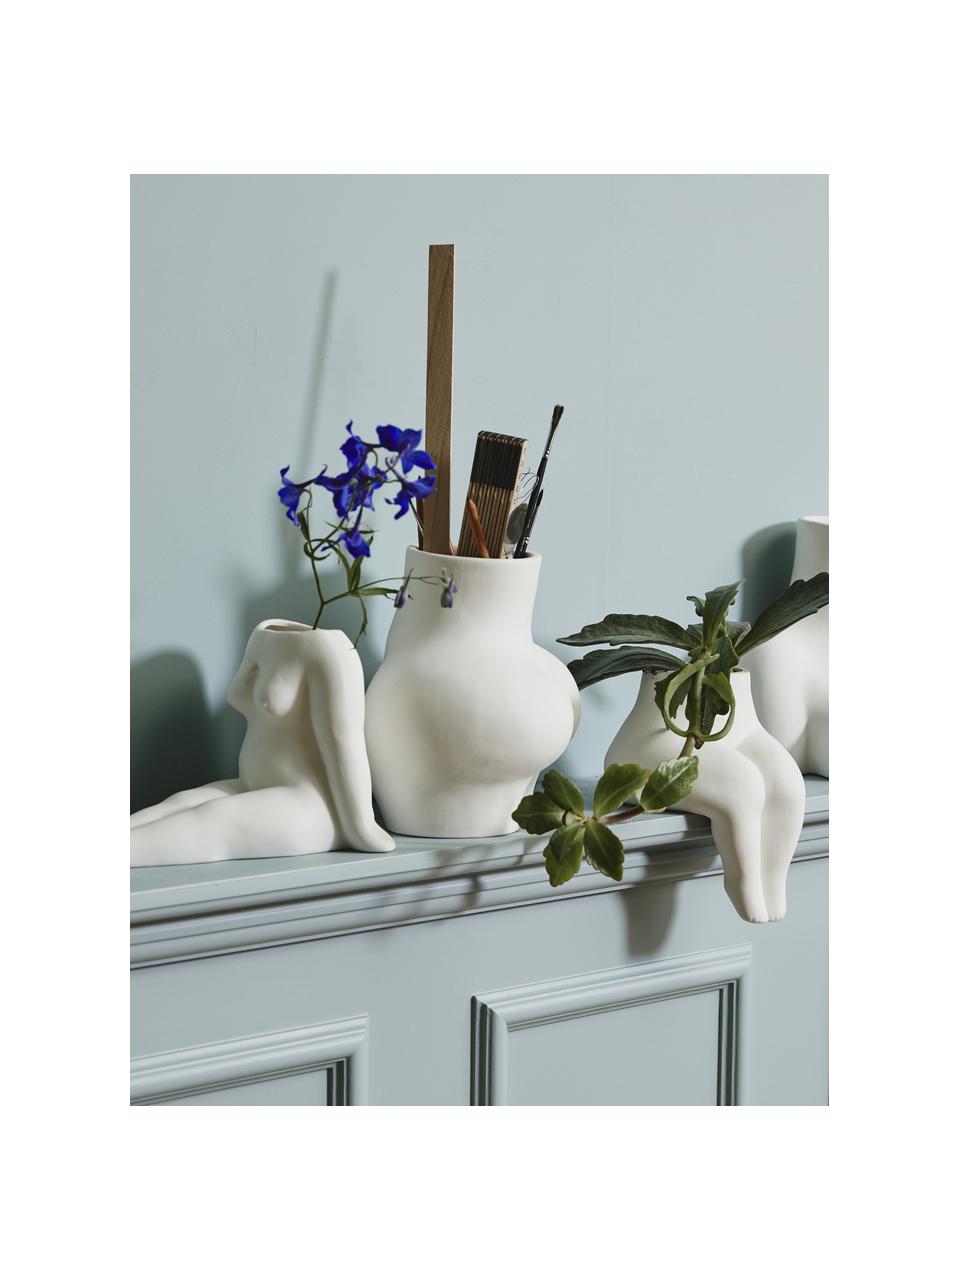 Vase design Avaji, Blanc